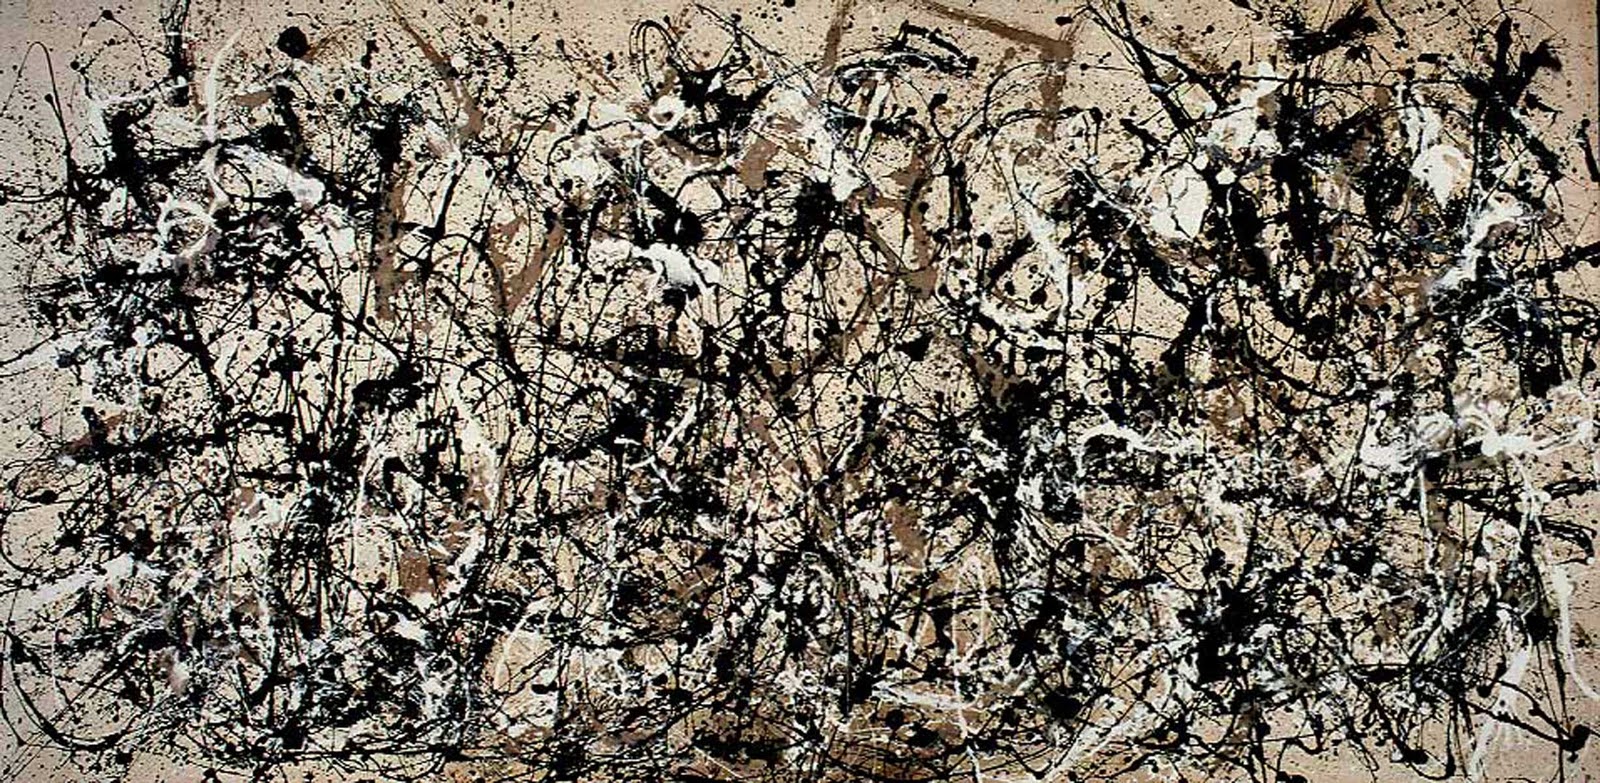 Pollock's Autumn Rhythm